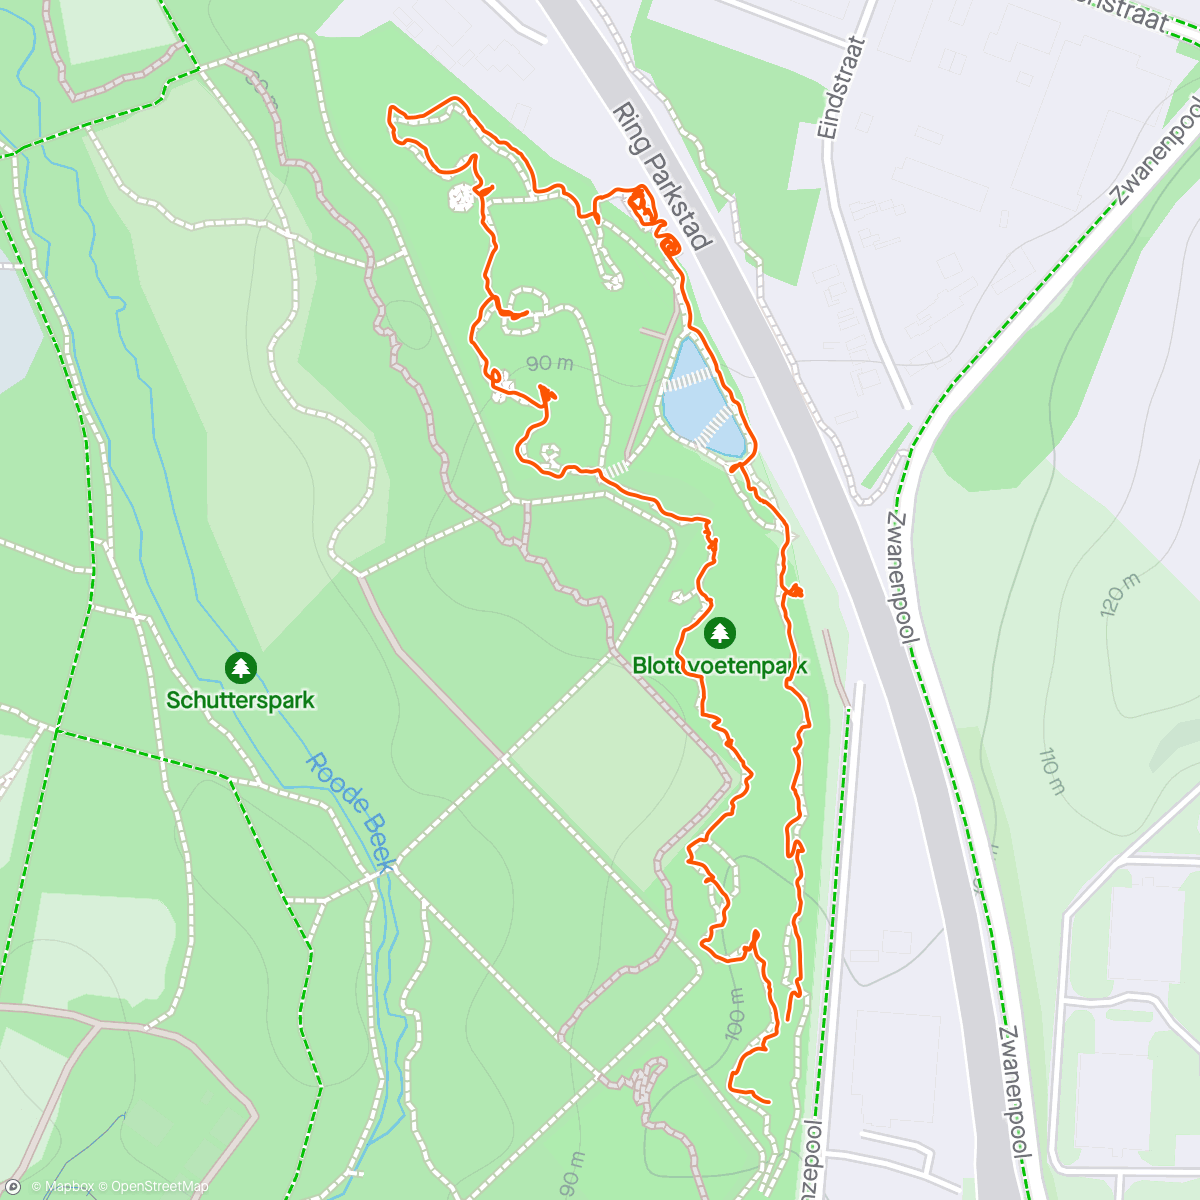 Map of the activity, Rondje blote voeten pad